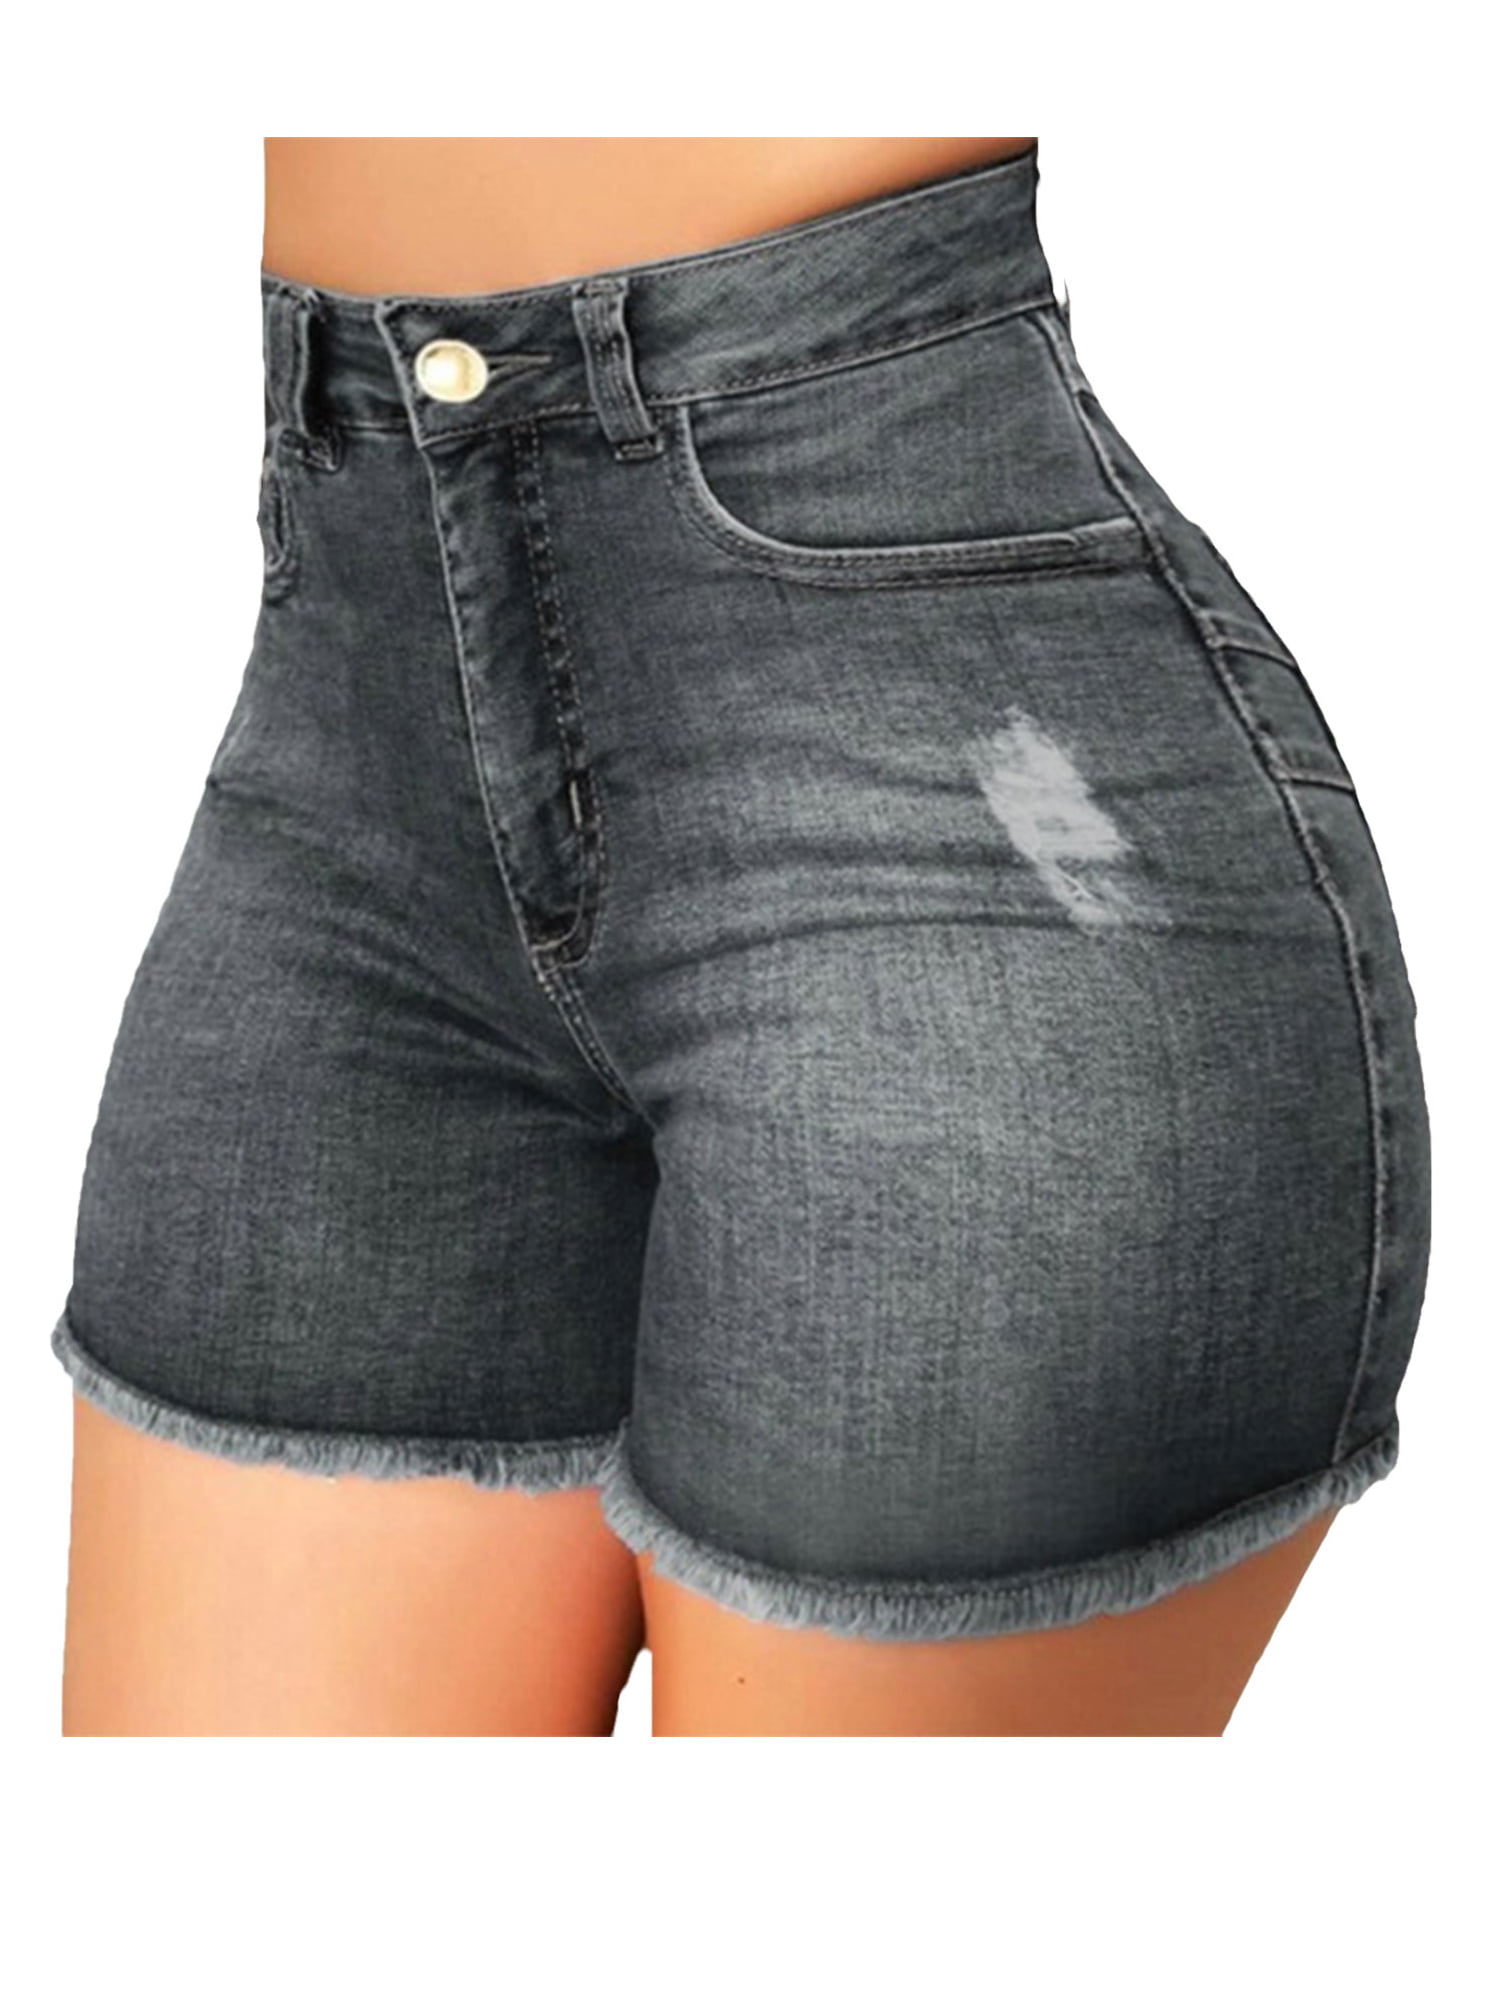 USA Made SIZE LARGE // High Waist Denim Cut Off Stone Wash Frayed Shorts 